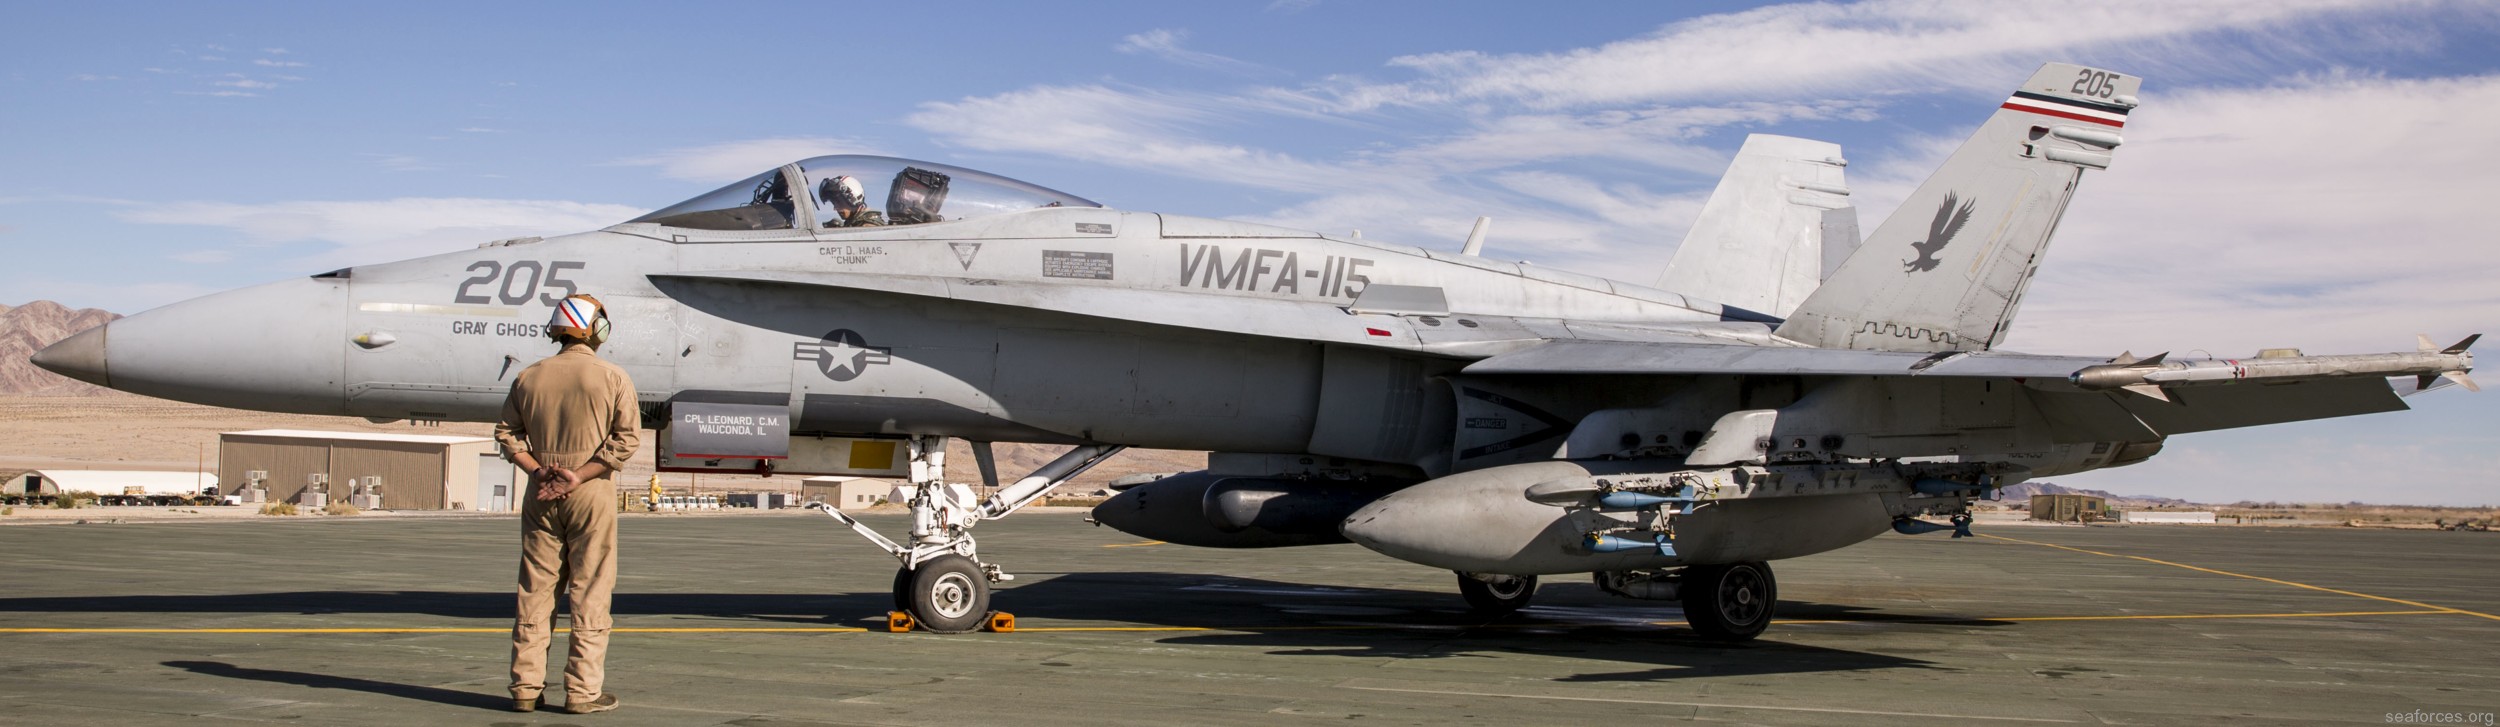 vmfa-115 silver eagles marine fighter attack squadron f/a-18a+ hornet 117